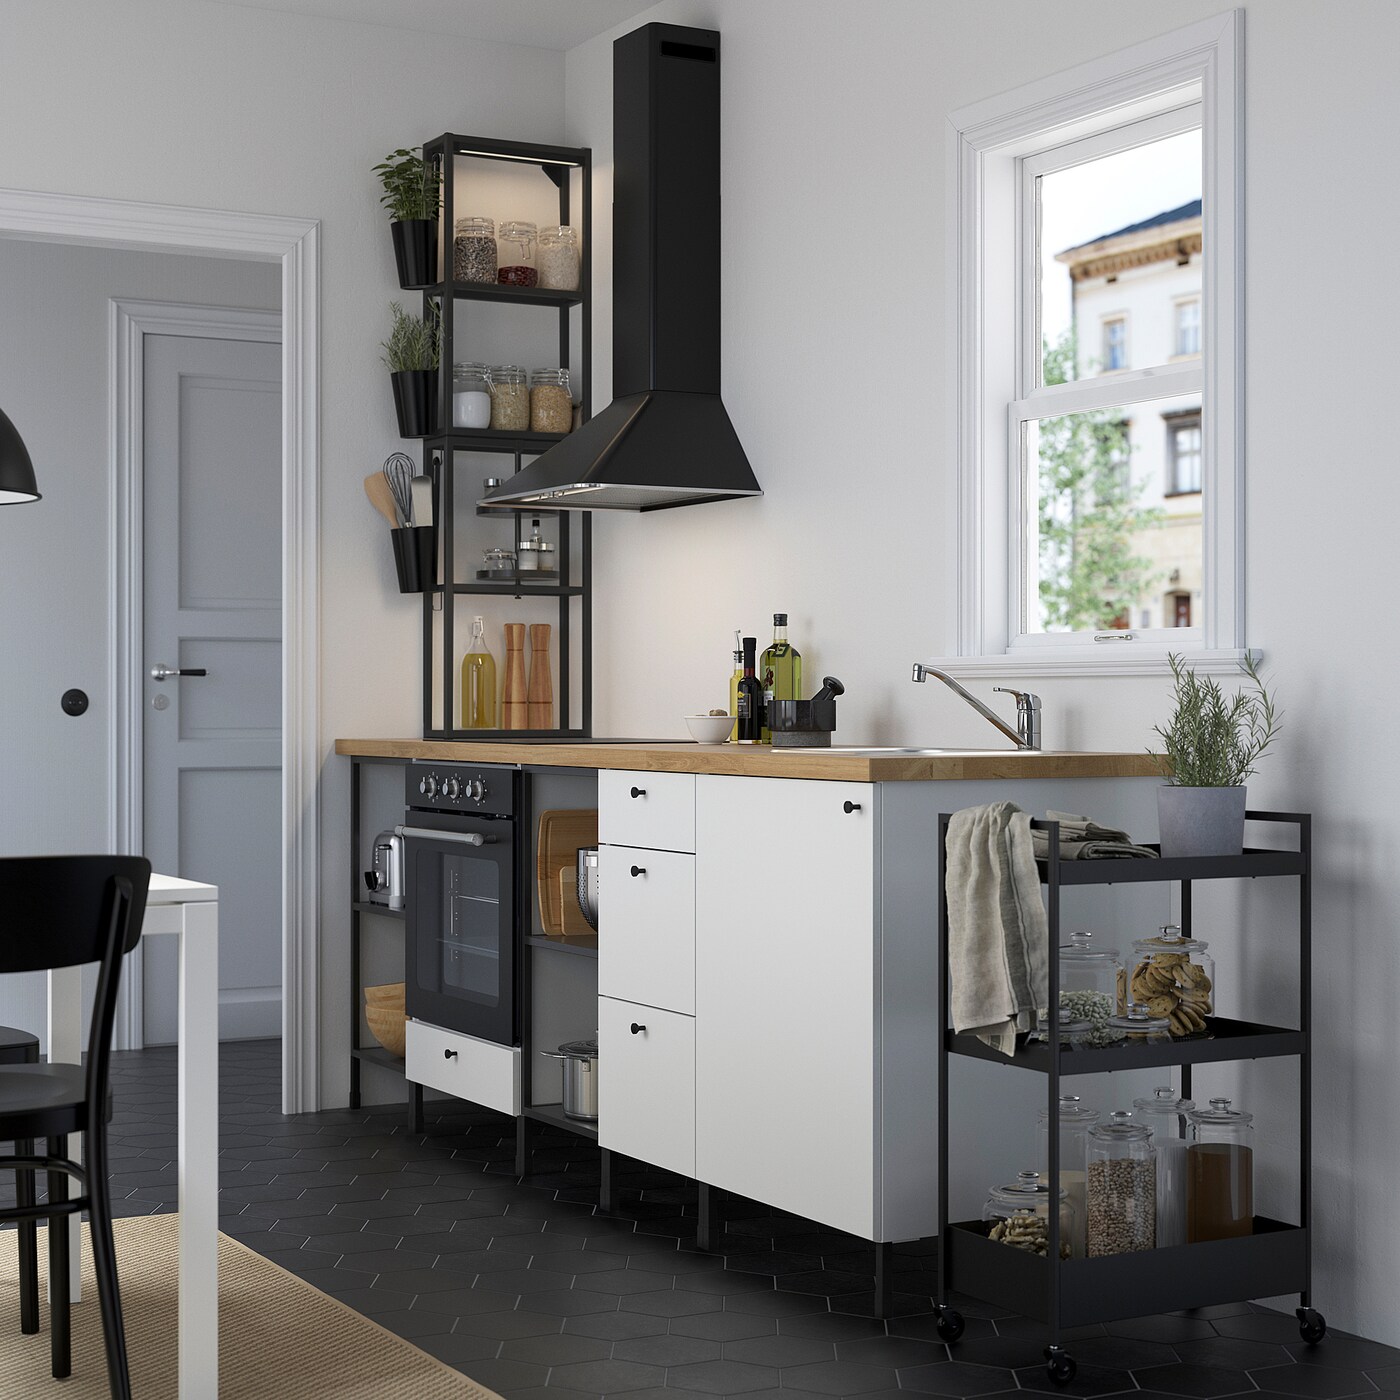 Mini cucine Ikea, le soluzioni salvaspazio che non ti aspetti, Foto